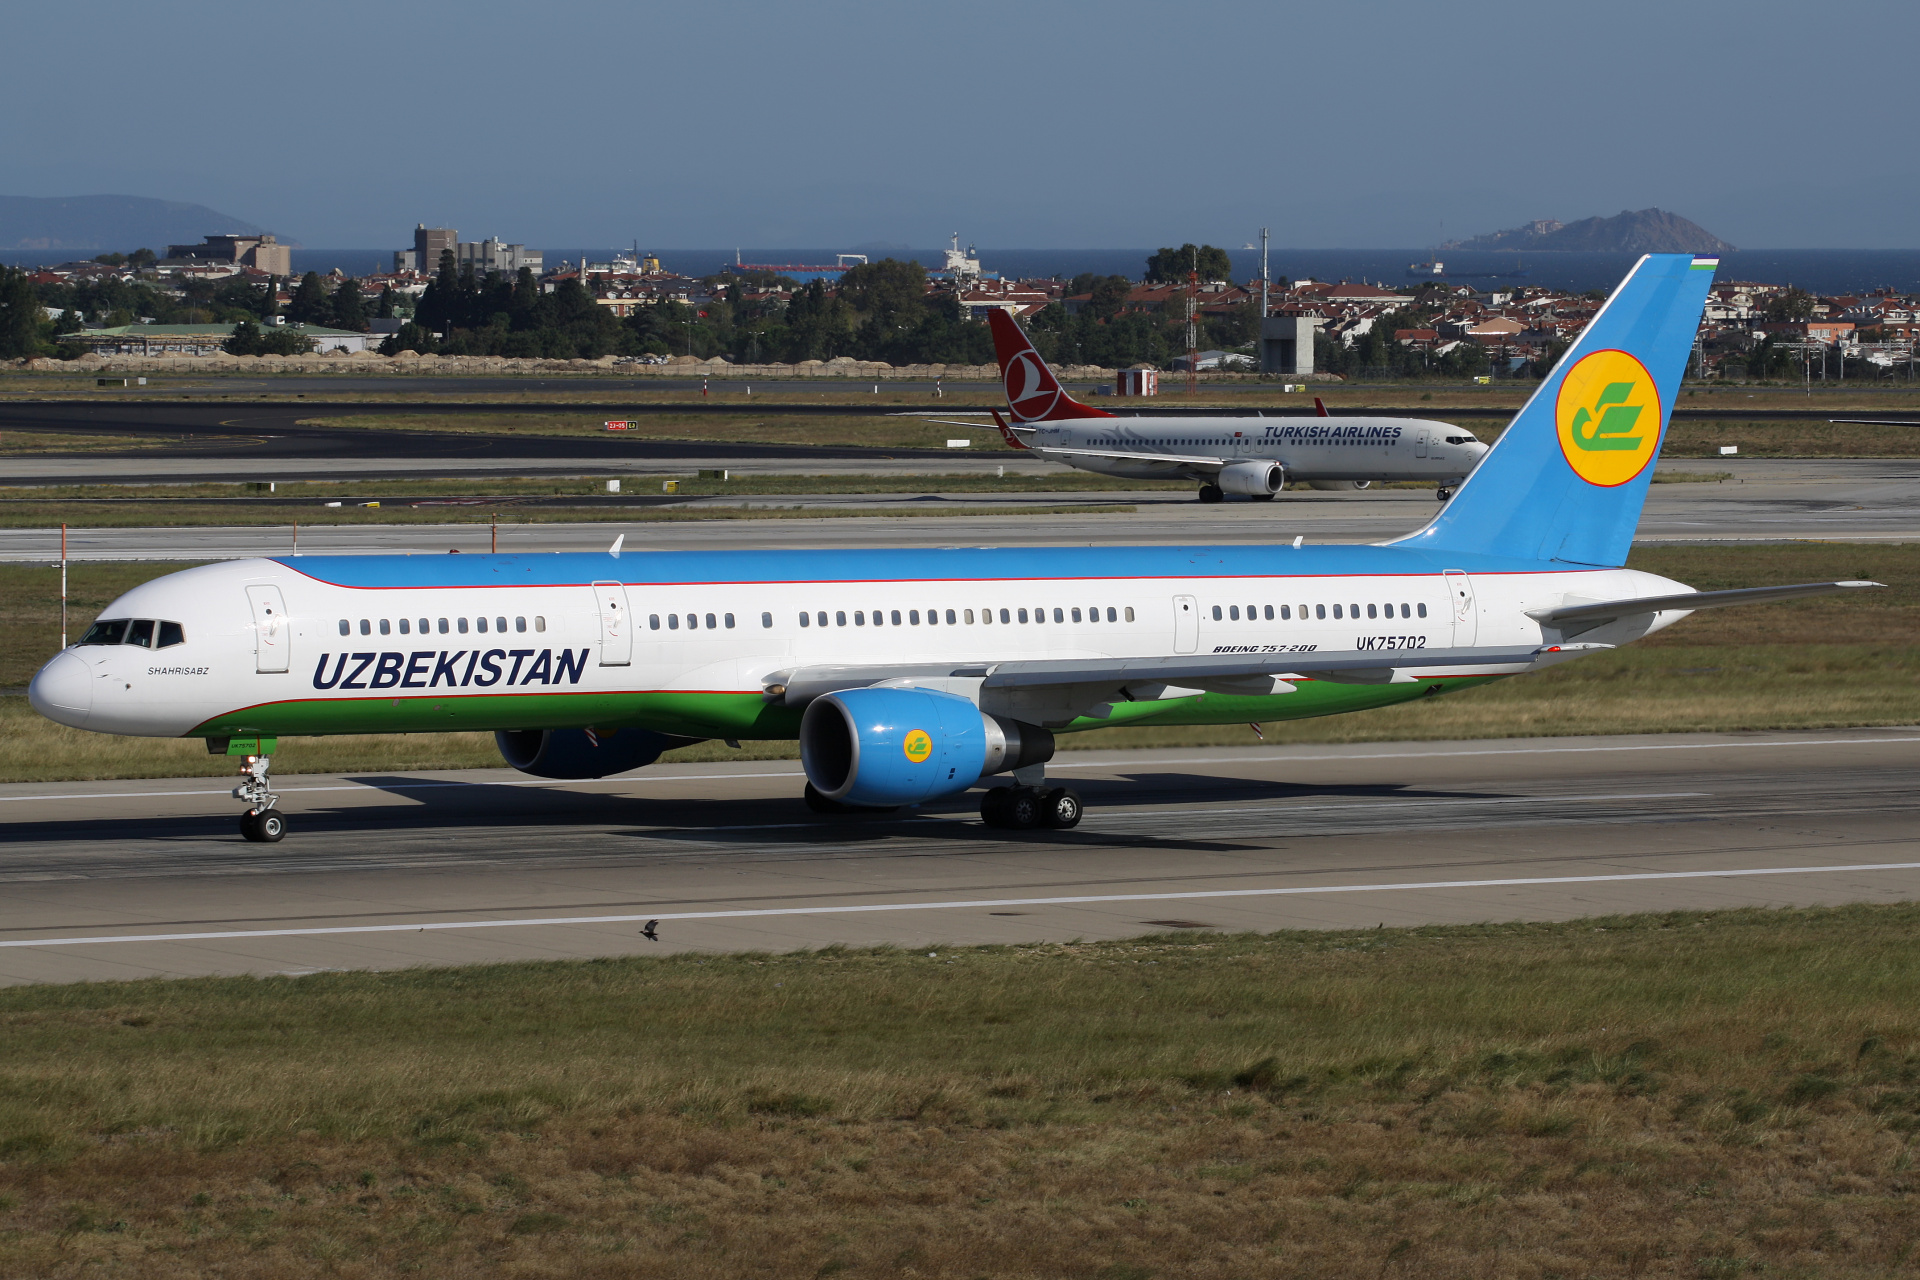 UK75702, Uzbekistan Airways (Samoloty » Port Lotniczy im. Atatürka w Stambule » Boeing 757-200)